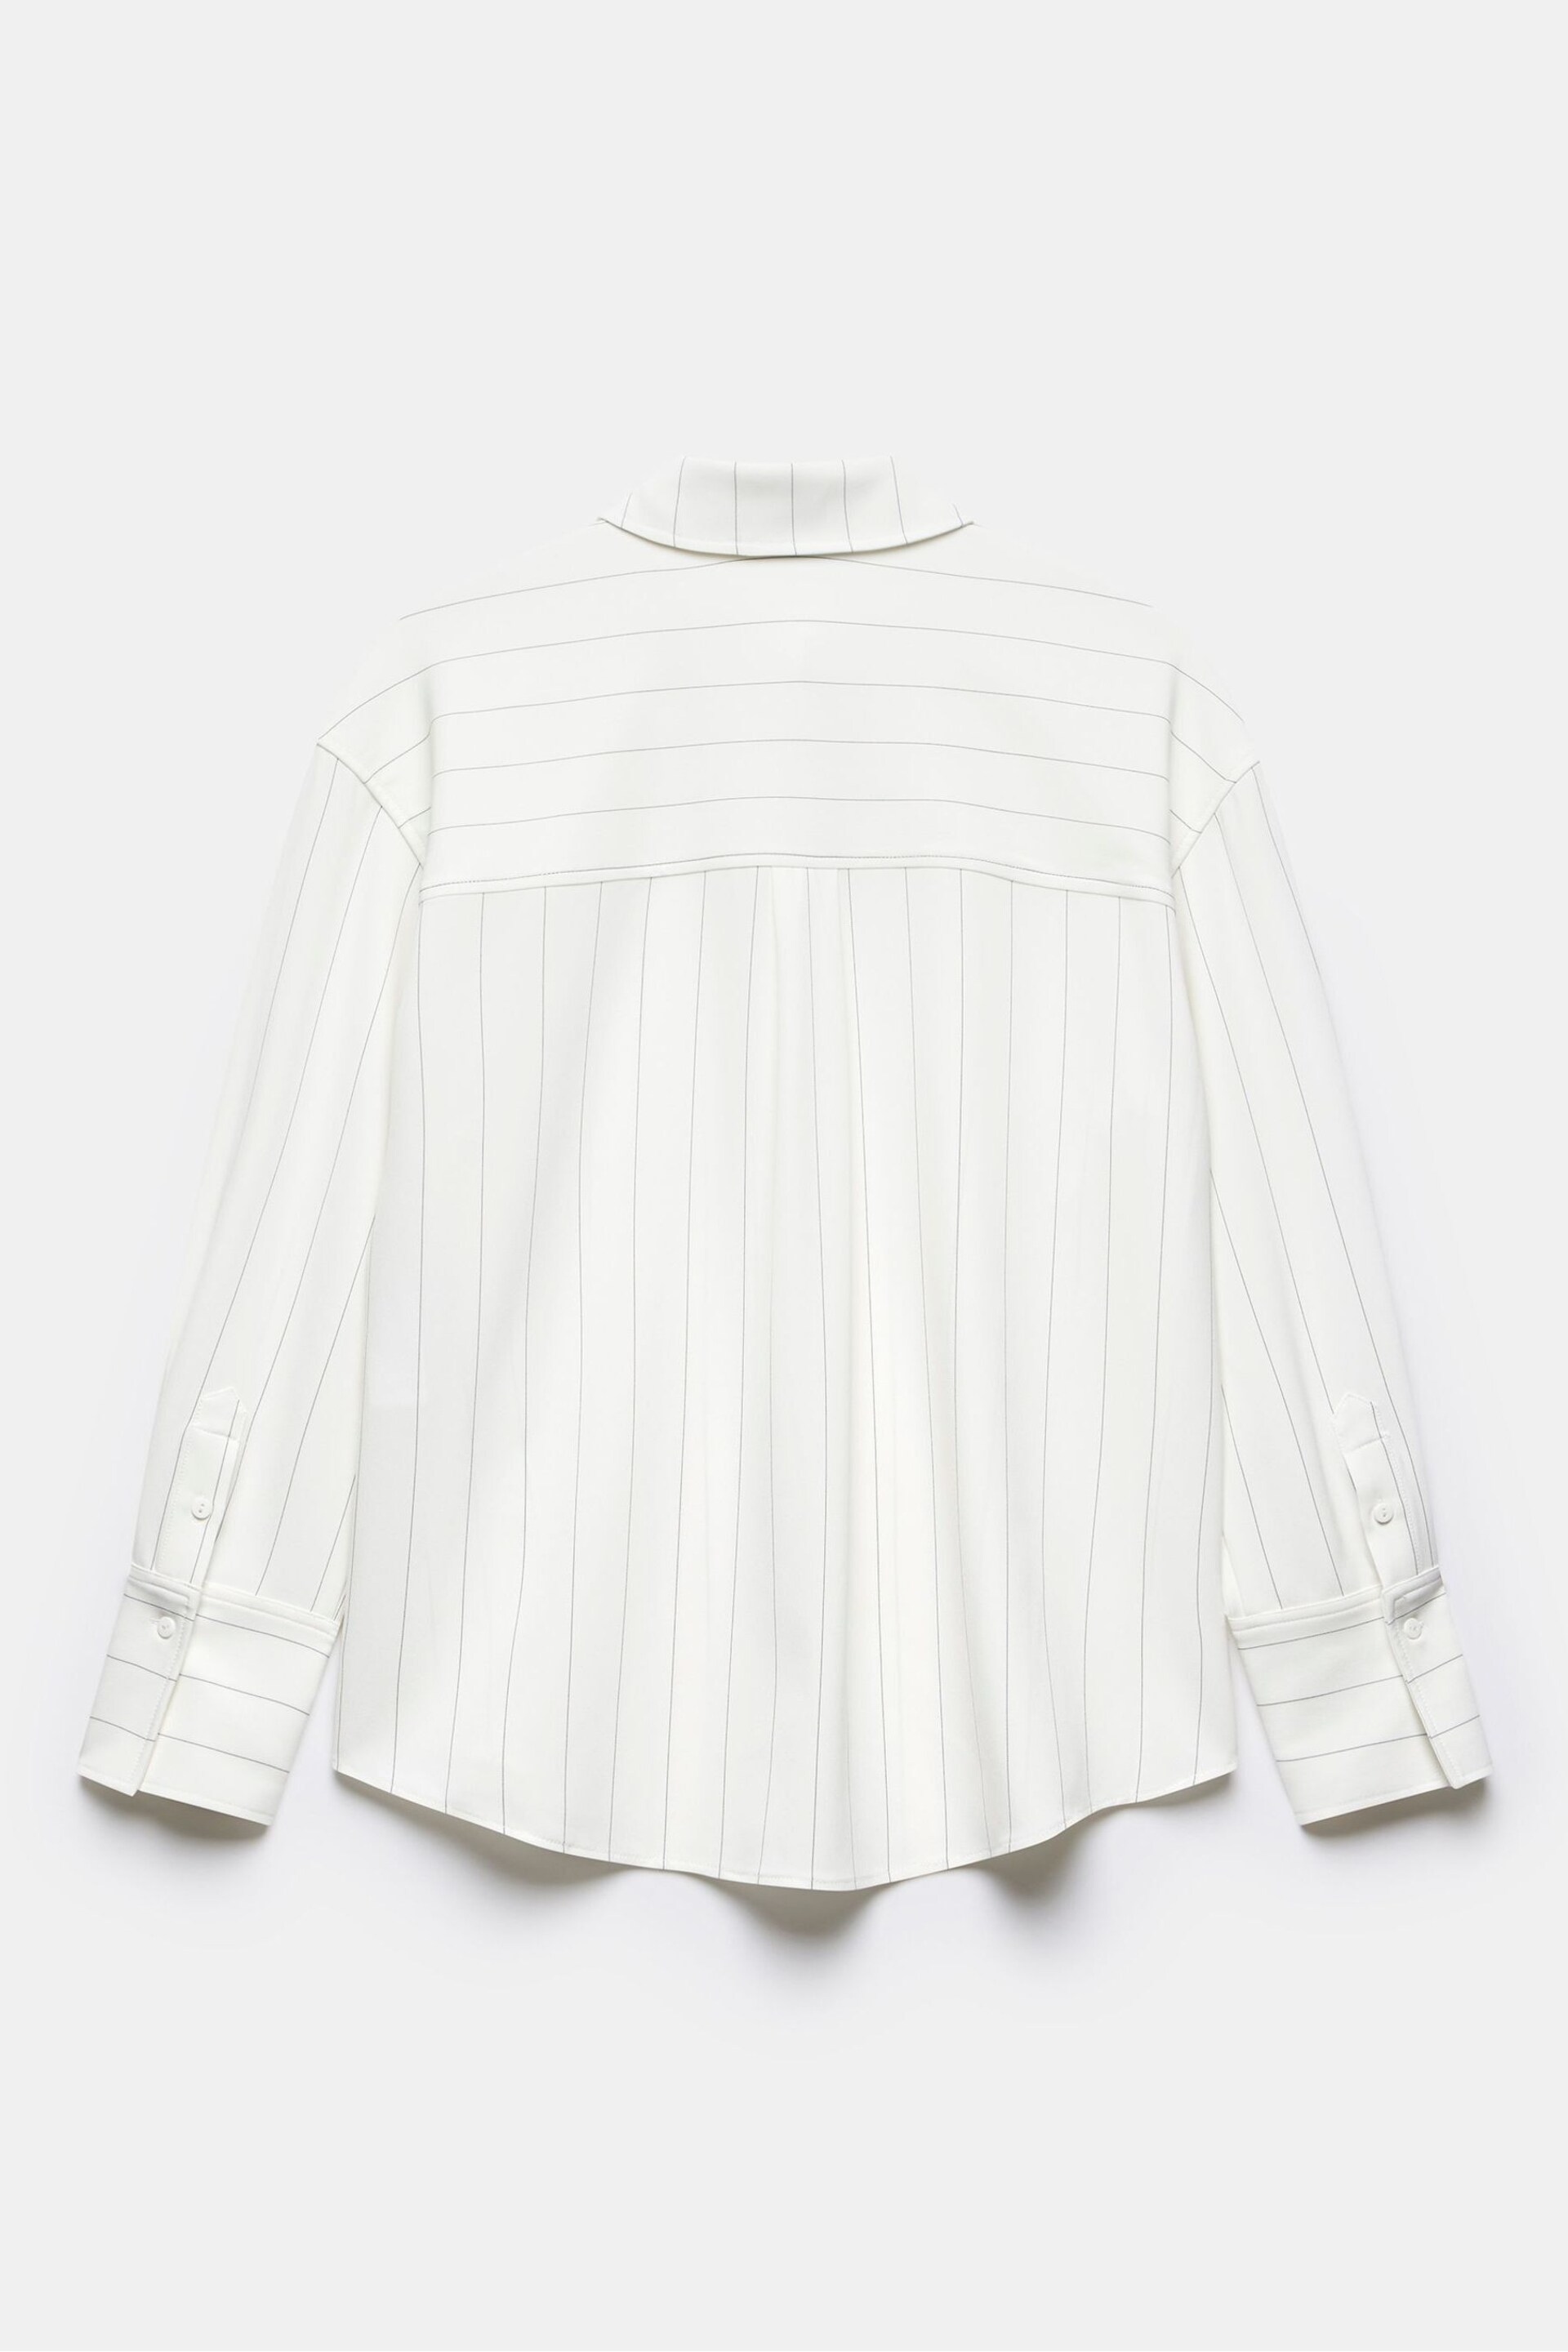 Mint Velvet White Oversized Pinstripe Shirt - Image 4 of 4